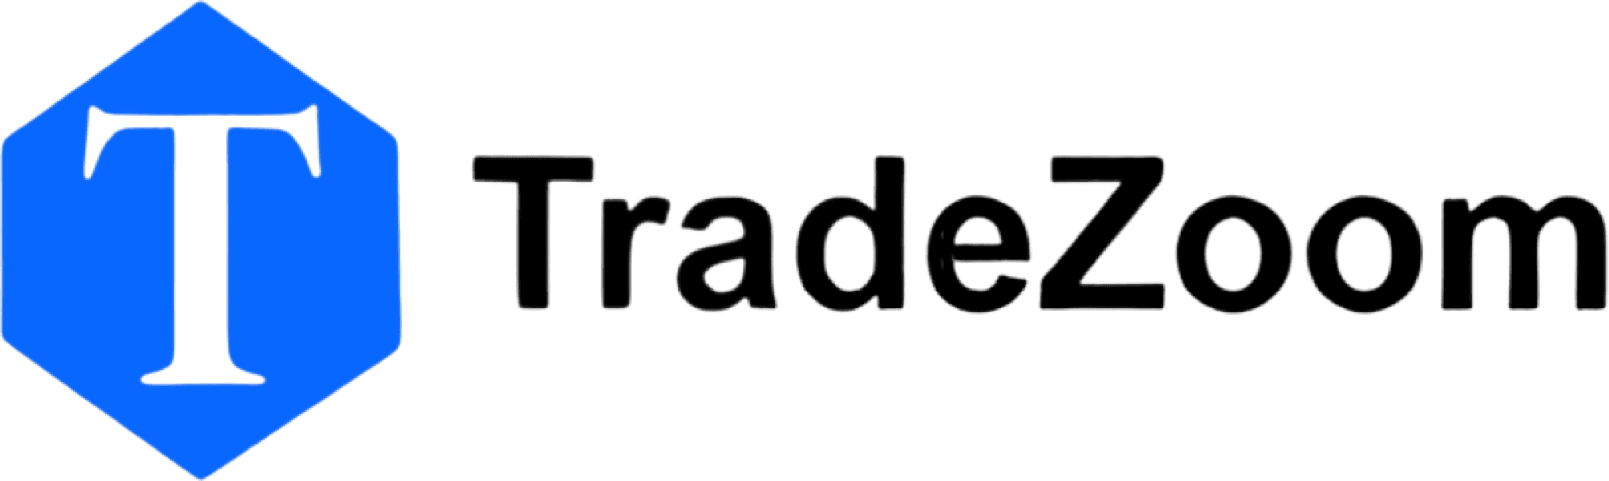 TradeZoom